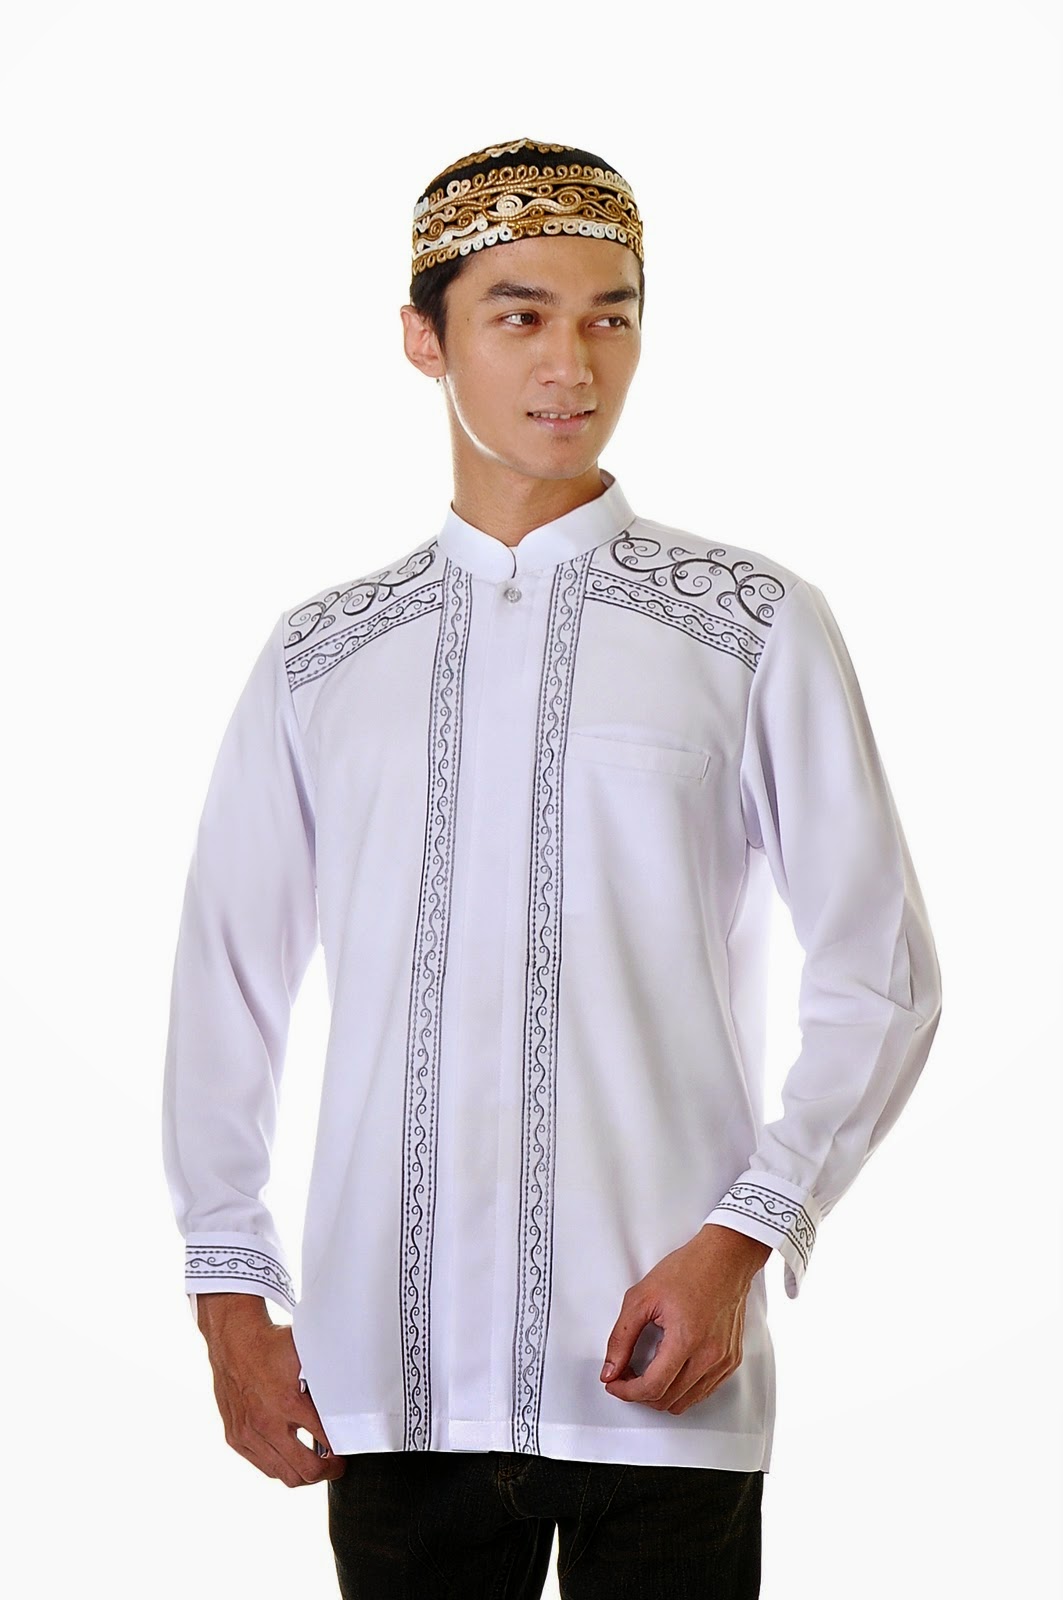 20 Contoh Model Baju Muslim Pria Terbaik 2016 Danitailor